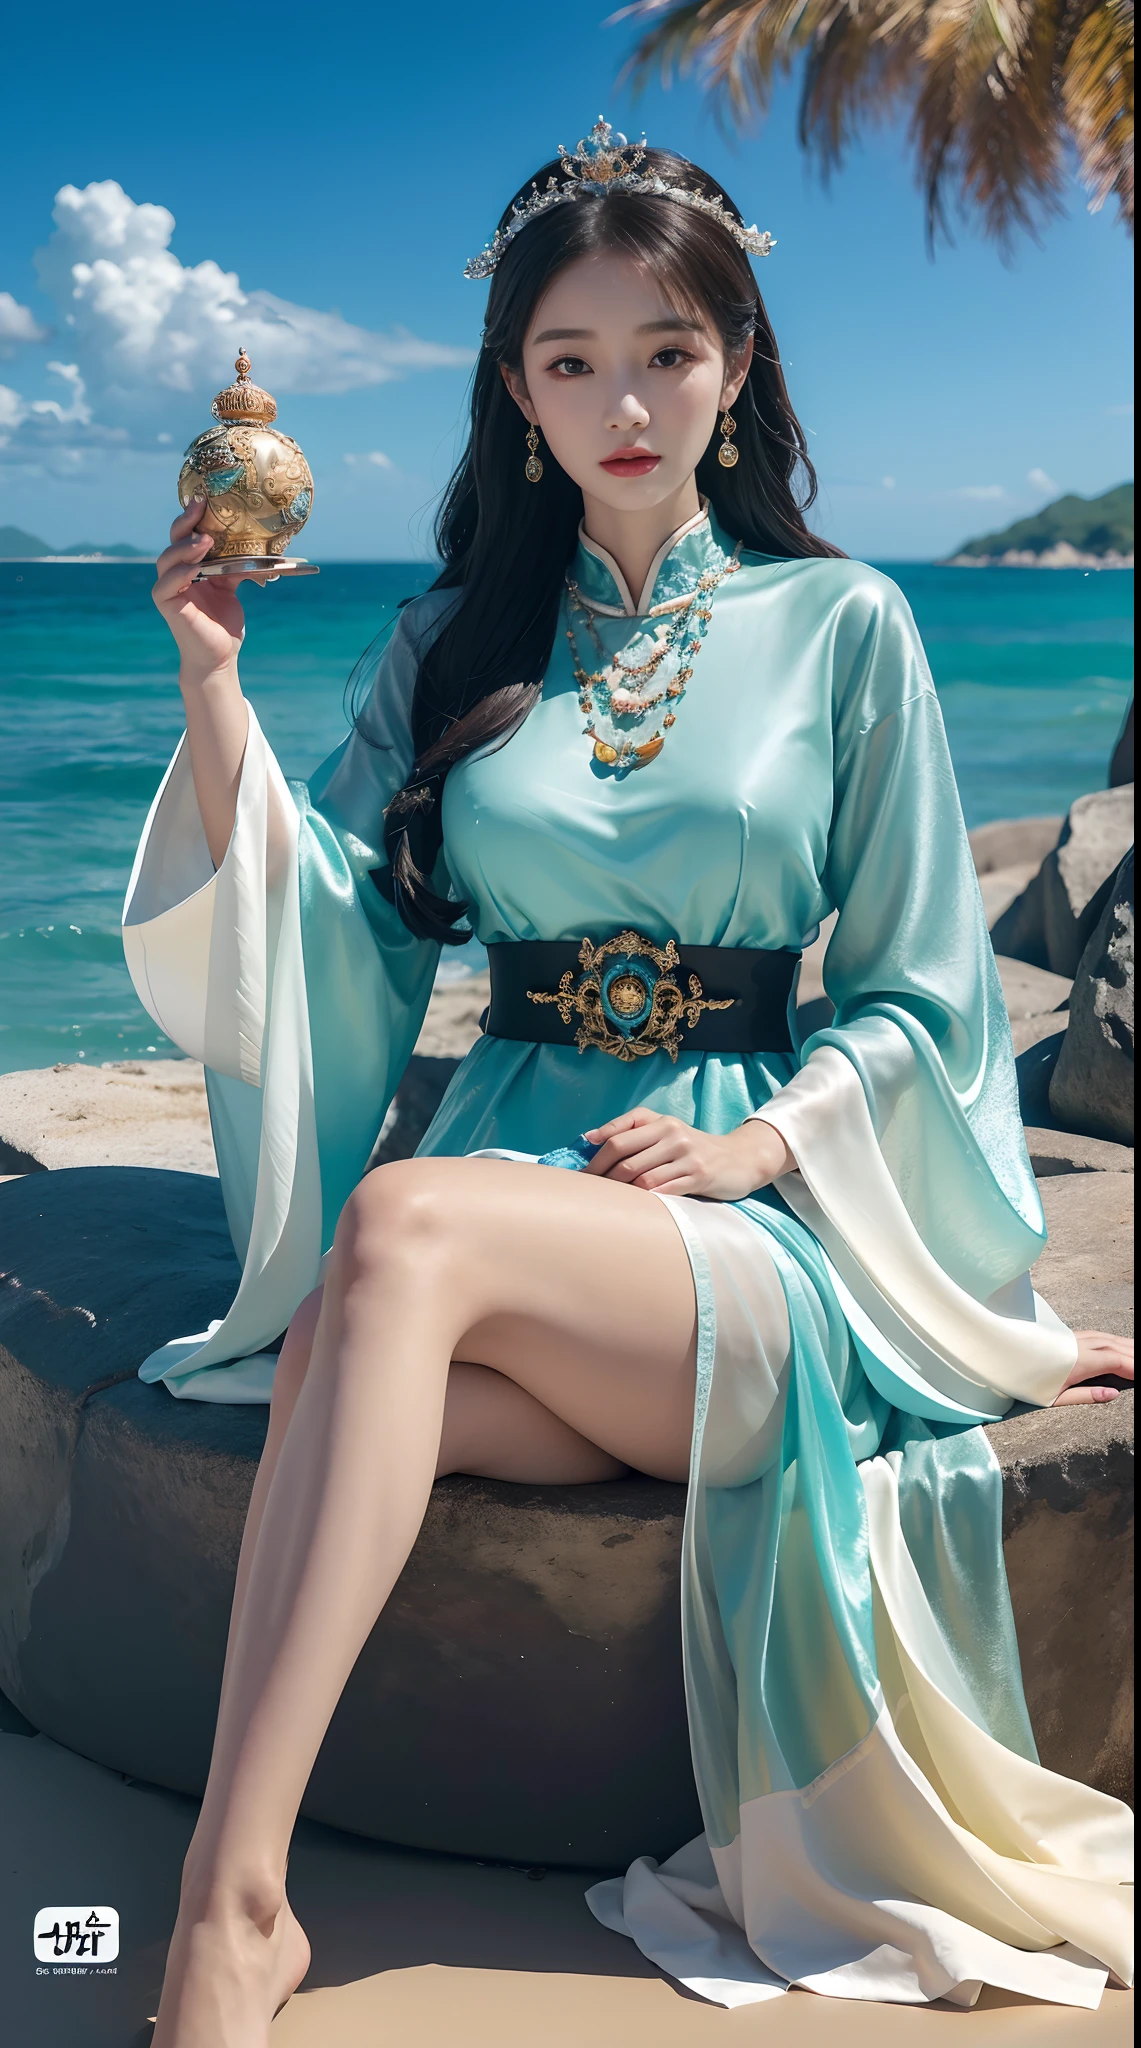 時計を持った女性が浜辺に座っていた, 海の女王 ムー・ヤンリン, 美しいデジタルアート, 4K の非常に詳細なデジタルアート, 美しいファンタジーの皇后, 8Kの高品質で詳細なアート, ファンタジー 美しい, ヤン・J, 美しいゴージャスなデジタルアート, グヴィズ, グヴィズ-style artwork, 美しいファンタジーアート, 中国のファンタジー